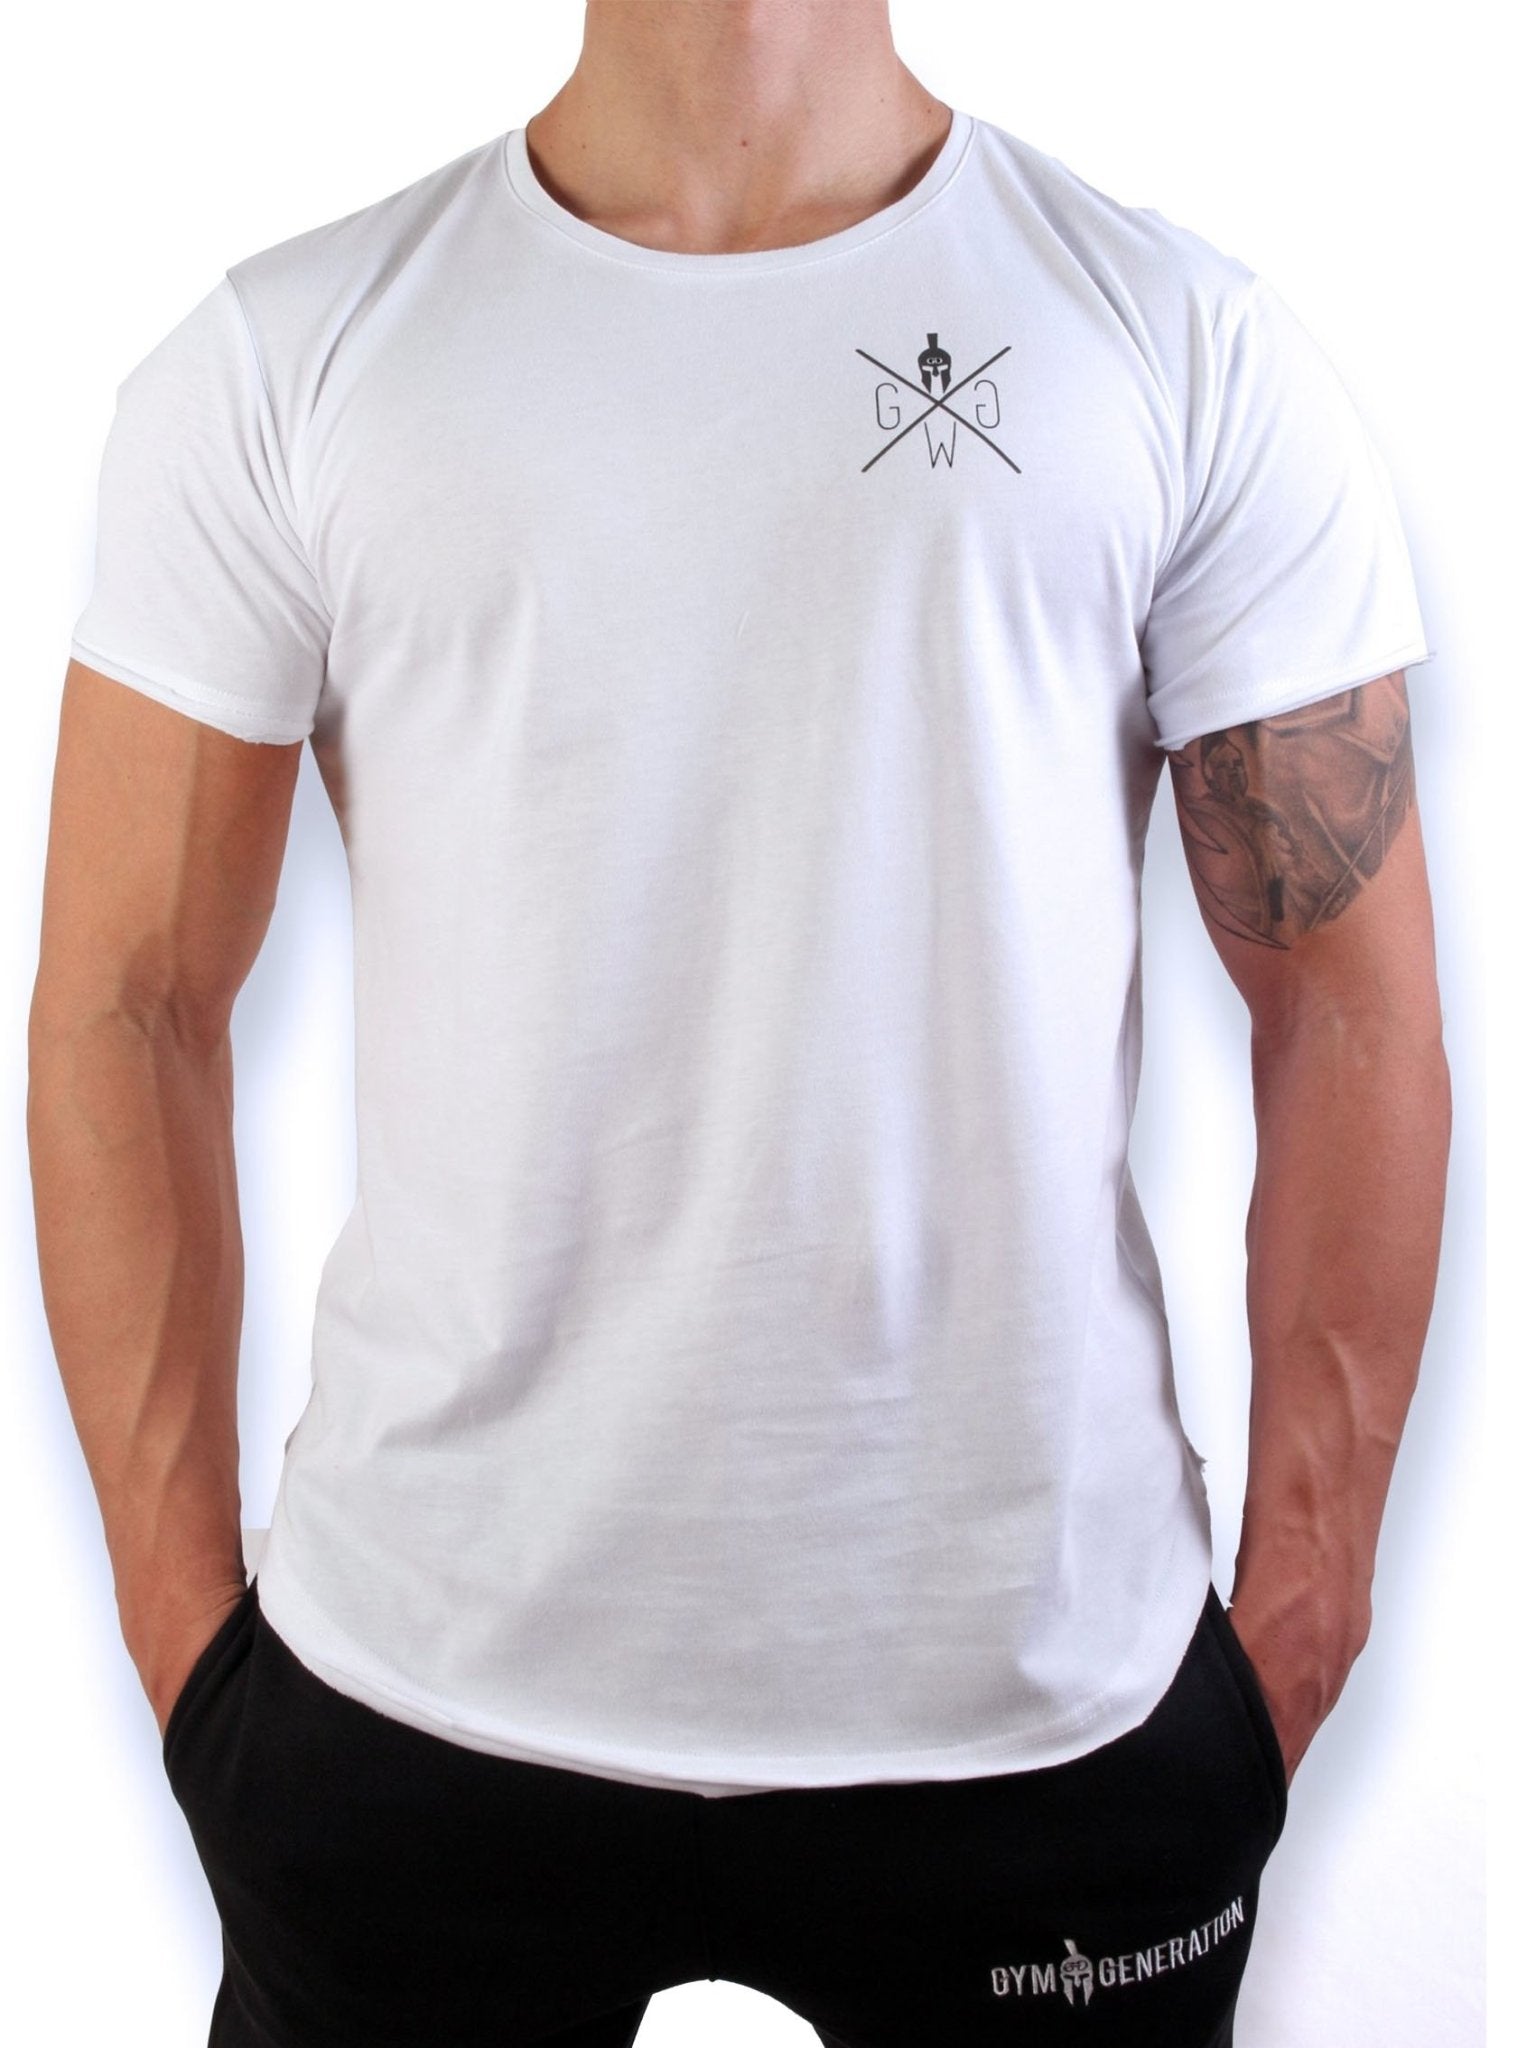 Weißes Herren Gym T-Shirt von Gym Generation mit Spartaner-Logo-Aufdruck für ultimativen Tragekomfort.